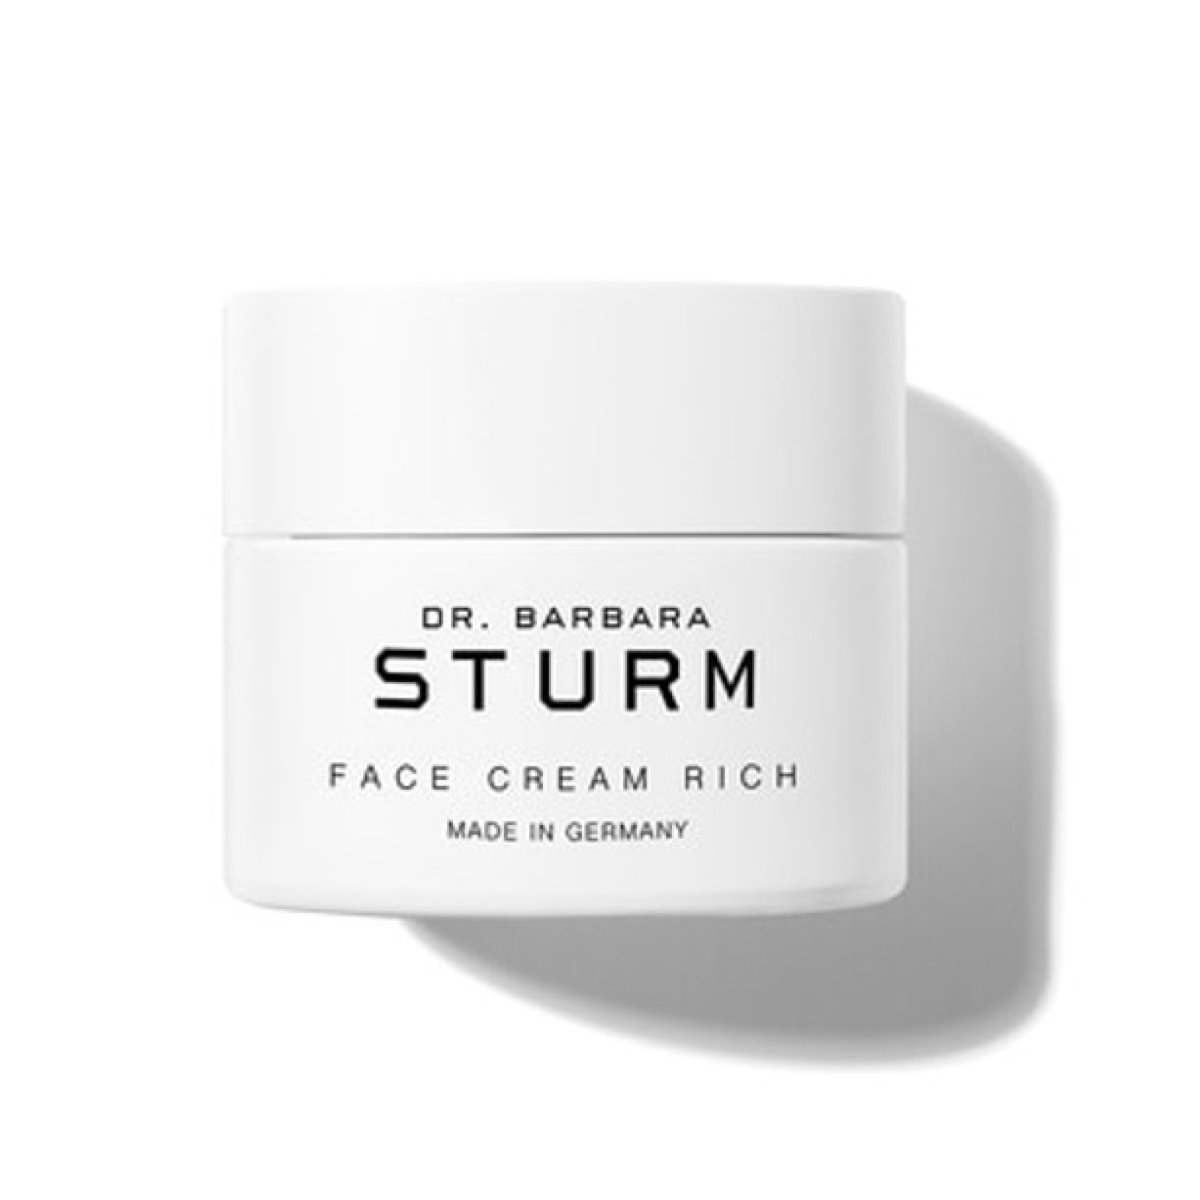 Dr. Barbara Sturm Face Cream Rich - SkincareEssentials